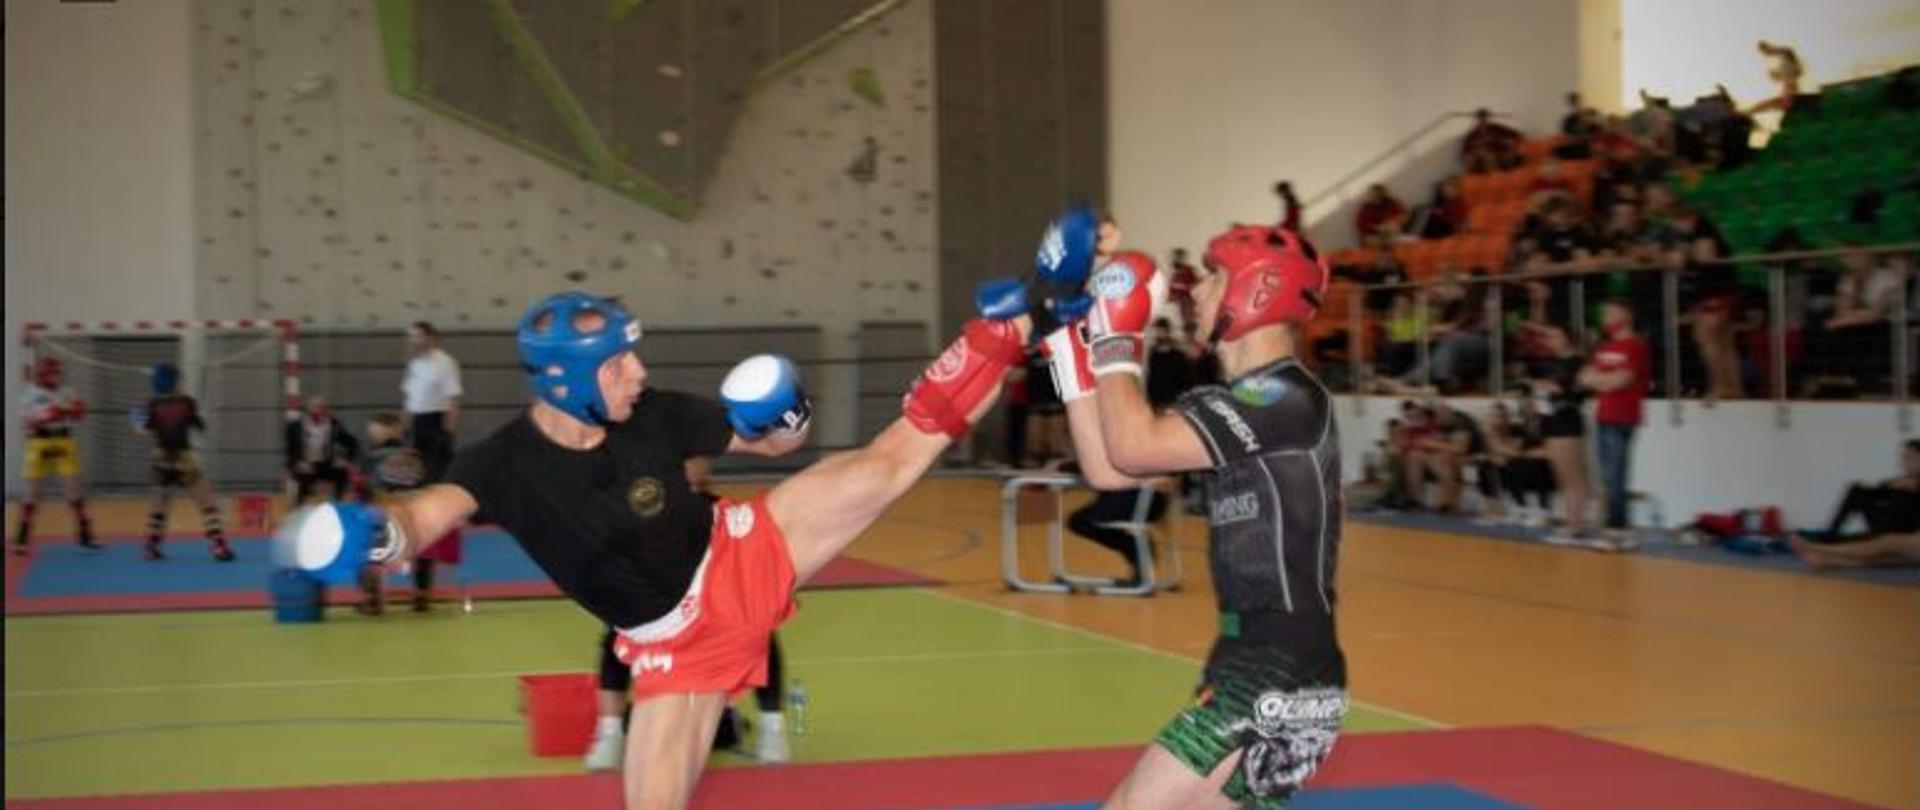 Zdjęcie przedstawia Adriana Durmę podczas walki na macie. Adrian uderza przeciwnika nogą, a ten próbuje zablokować uderzenie podniesionymi ręk0ma. W tle widoczne są trybuny i przyglądający się walce inni zawodnicy.